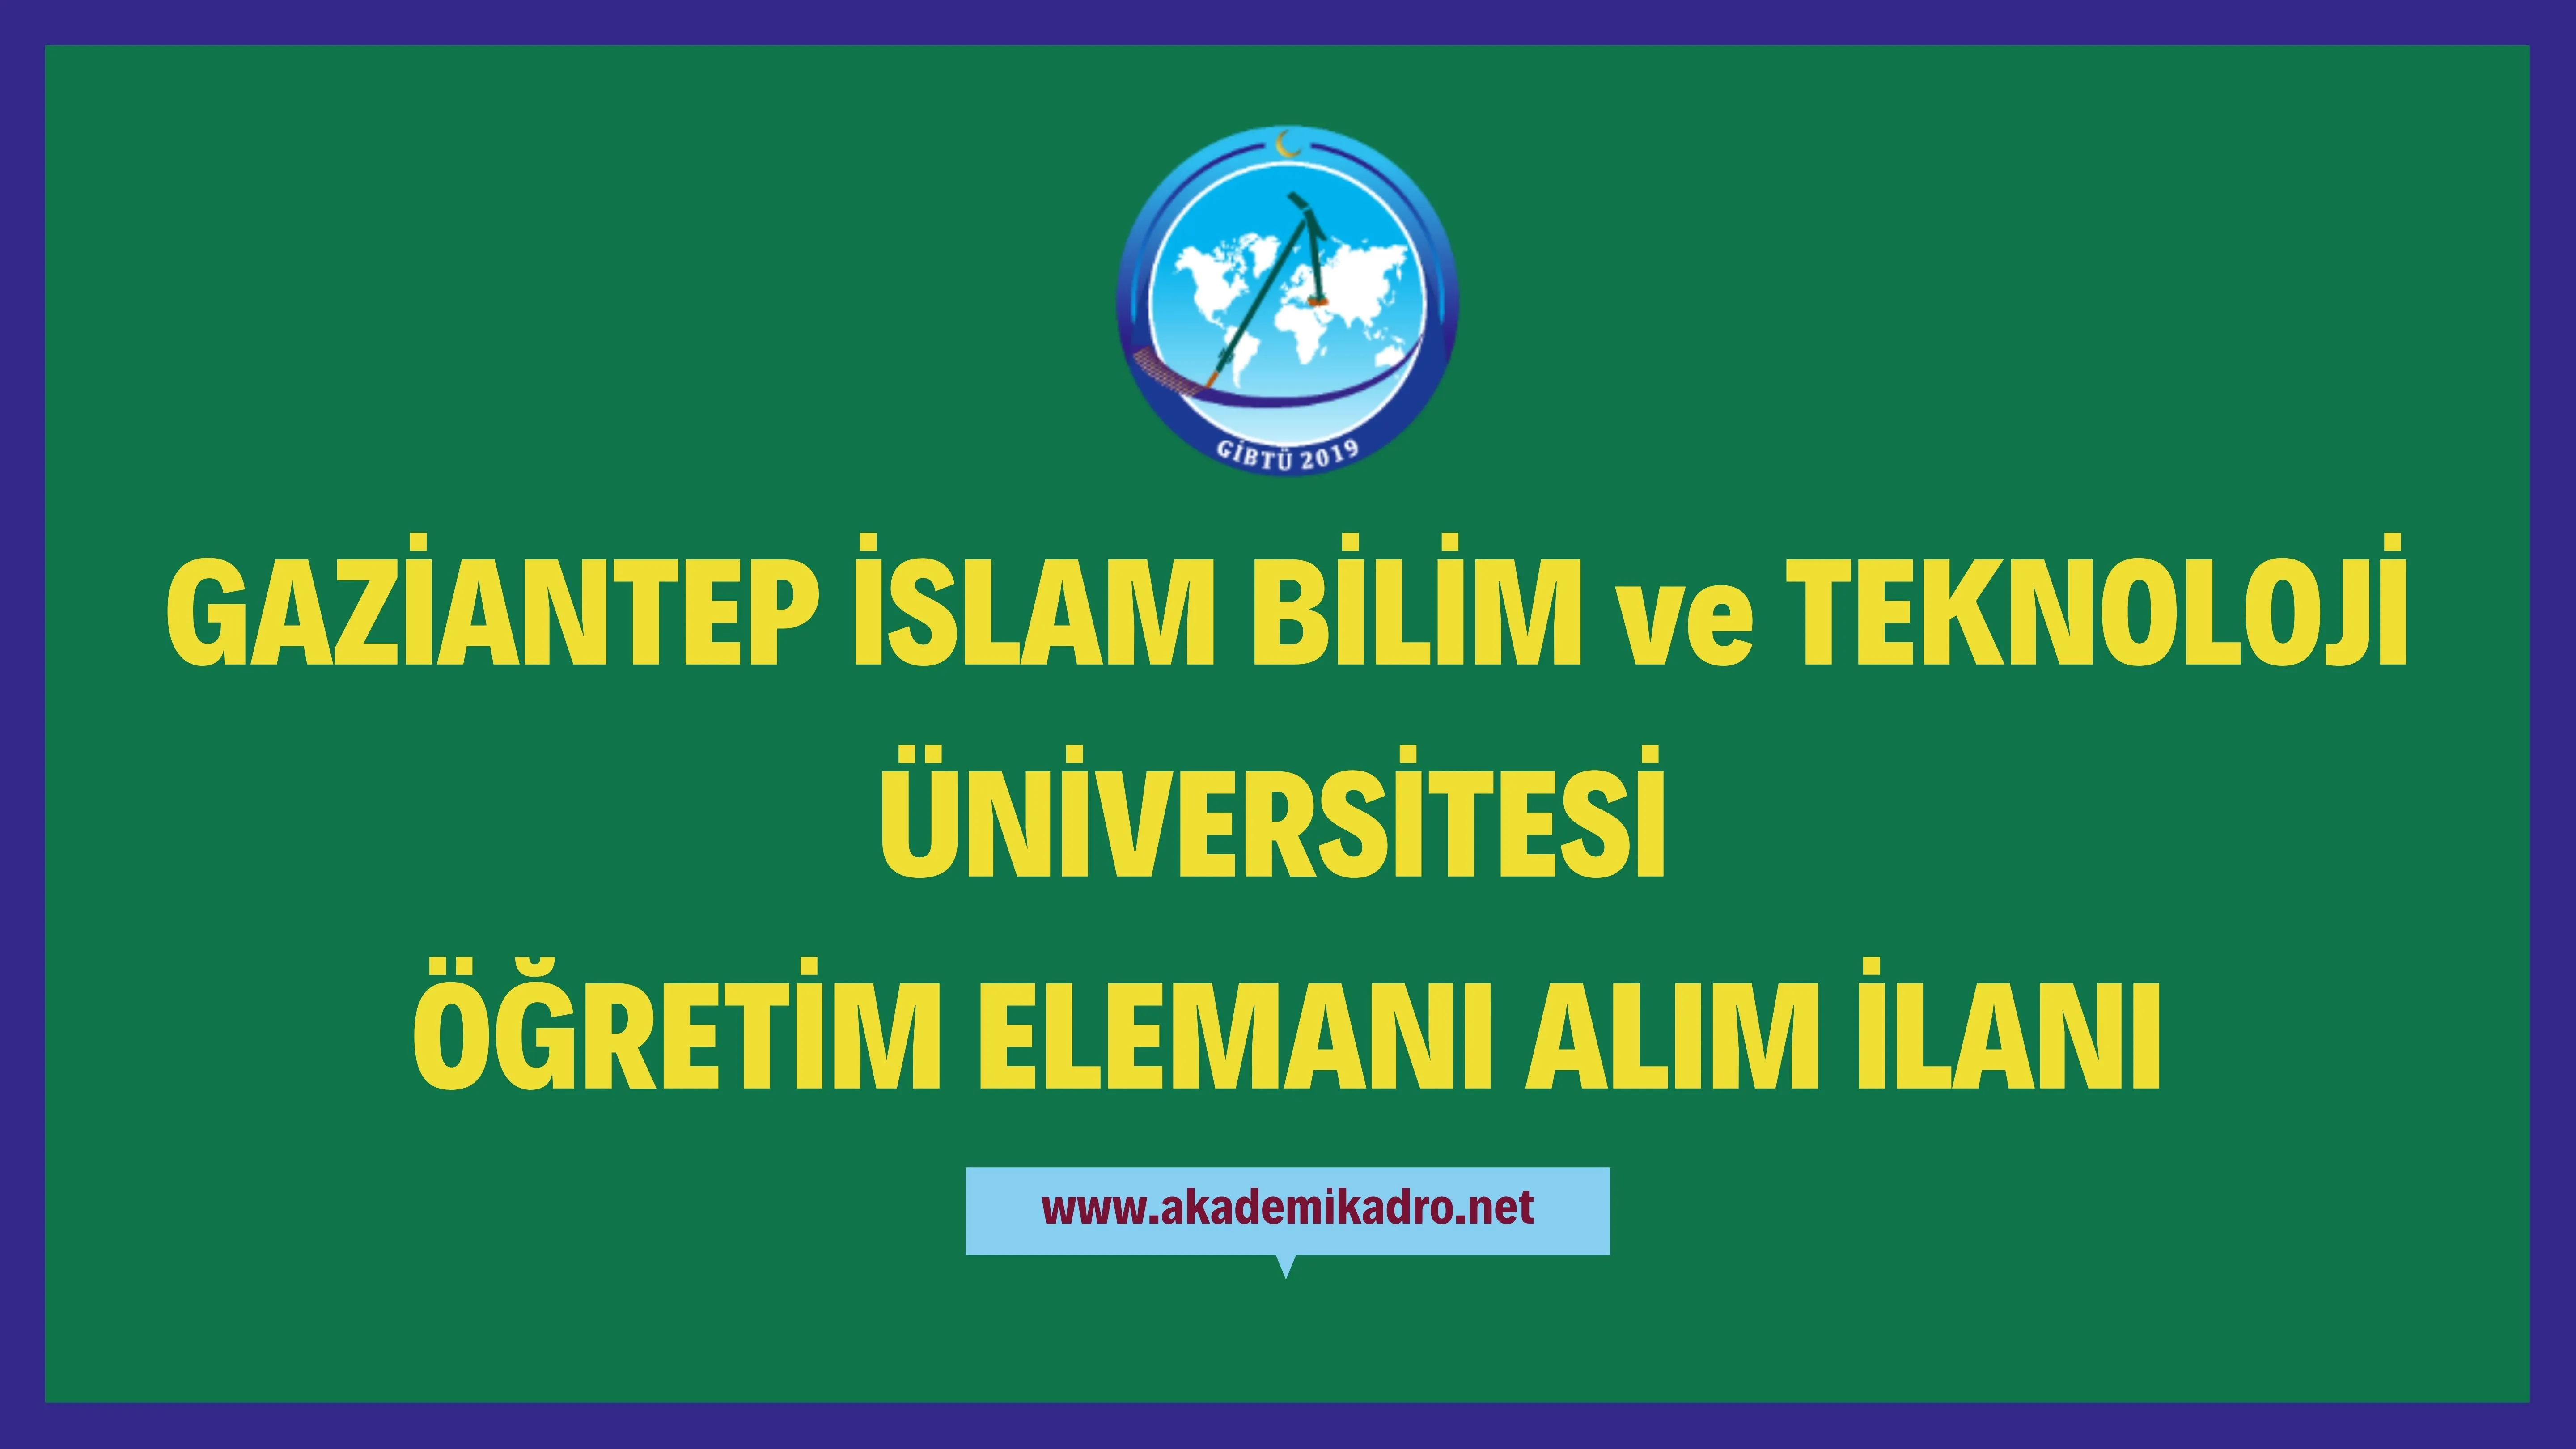 Gaziantep İslam Bilim ve Teknoloji Üniversitesi 9 Araştırma görevlisi, 5 Öğretim görevlisi ve 22 Öğretim üyesi alacak.